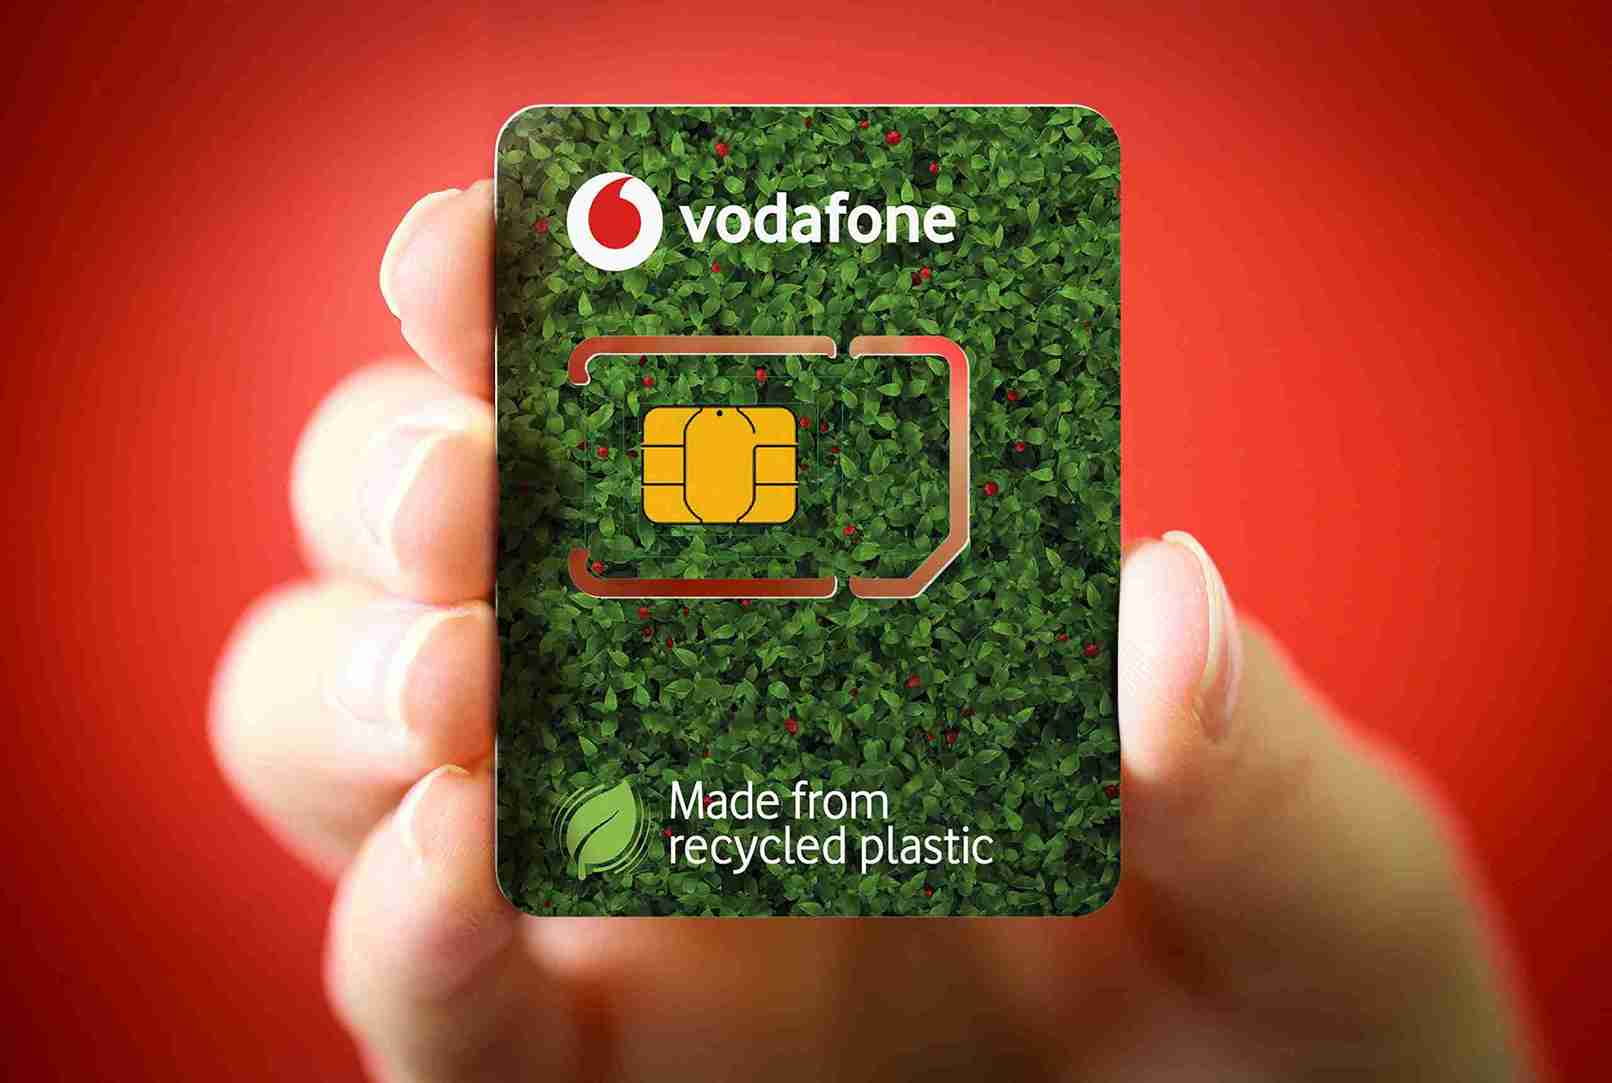 سیم کارت توریستی وودافون (Vodafone)